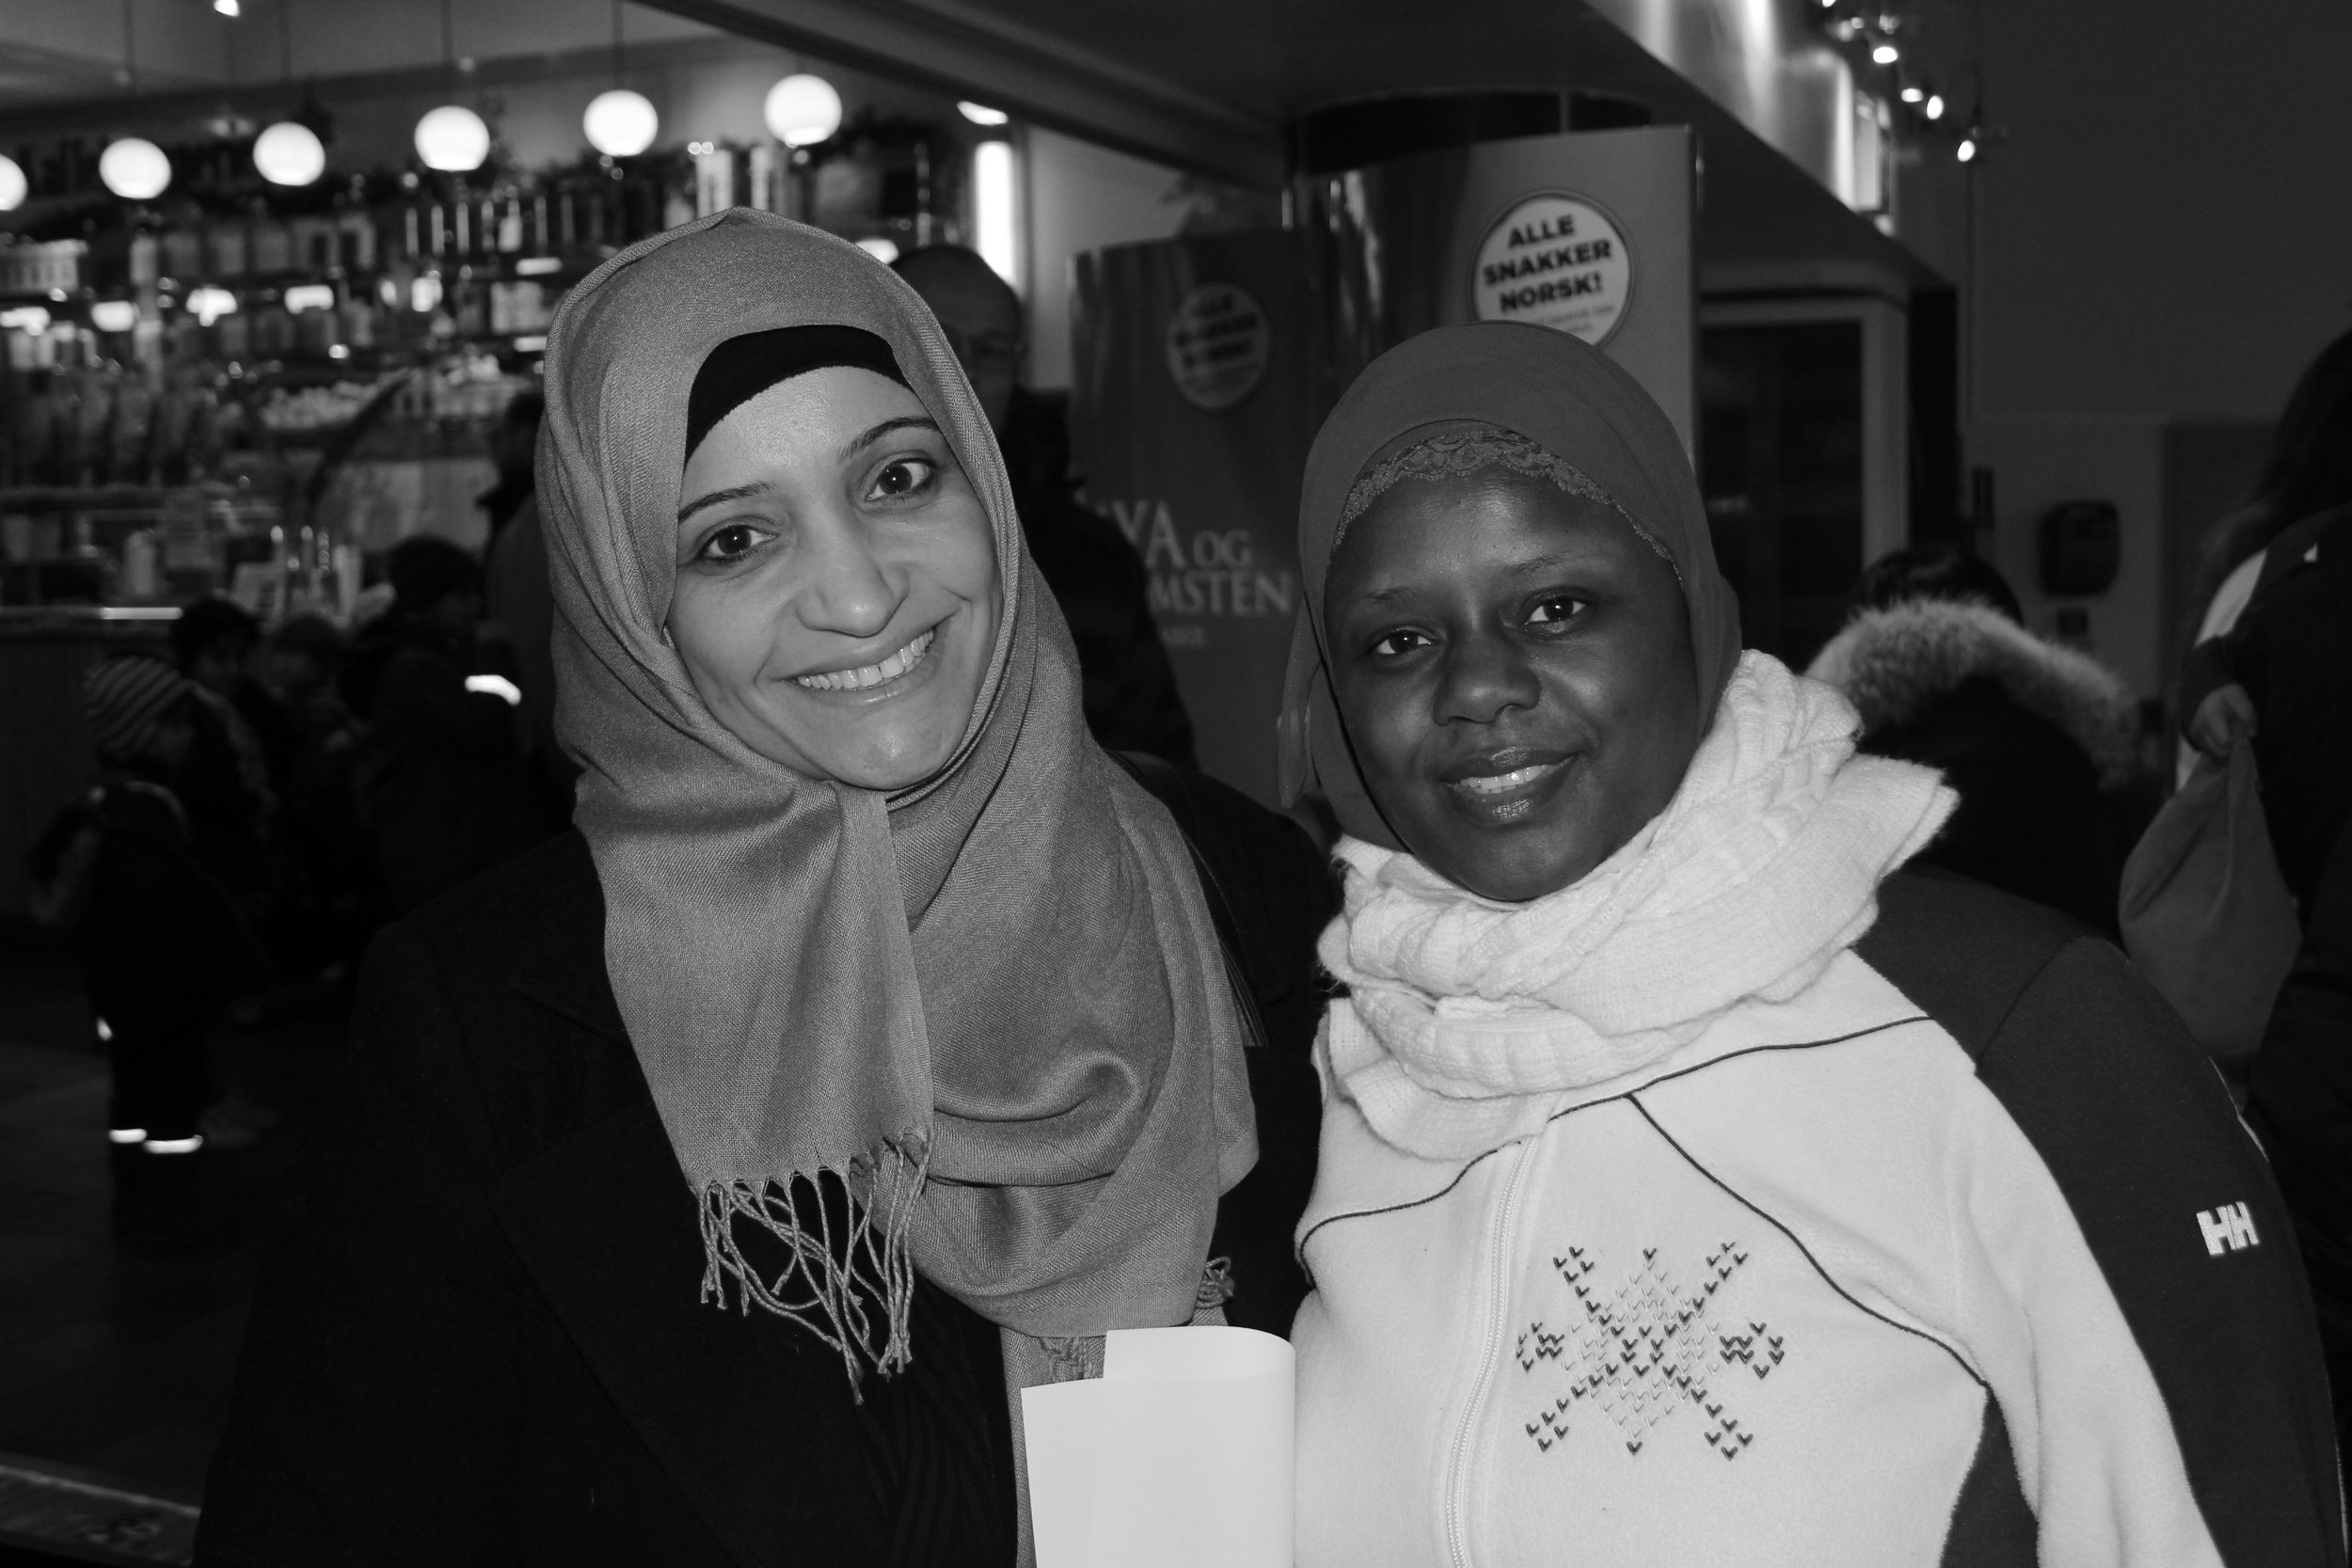 Mardiah fra Bahrain har vært med på Abloom filmfestival siden 2012. Hun ble kjent med Faridah de begge var med på samtalegrupper for foreldrene i bydel Gamle Oslo lenge før festivalen fant sted.